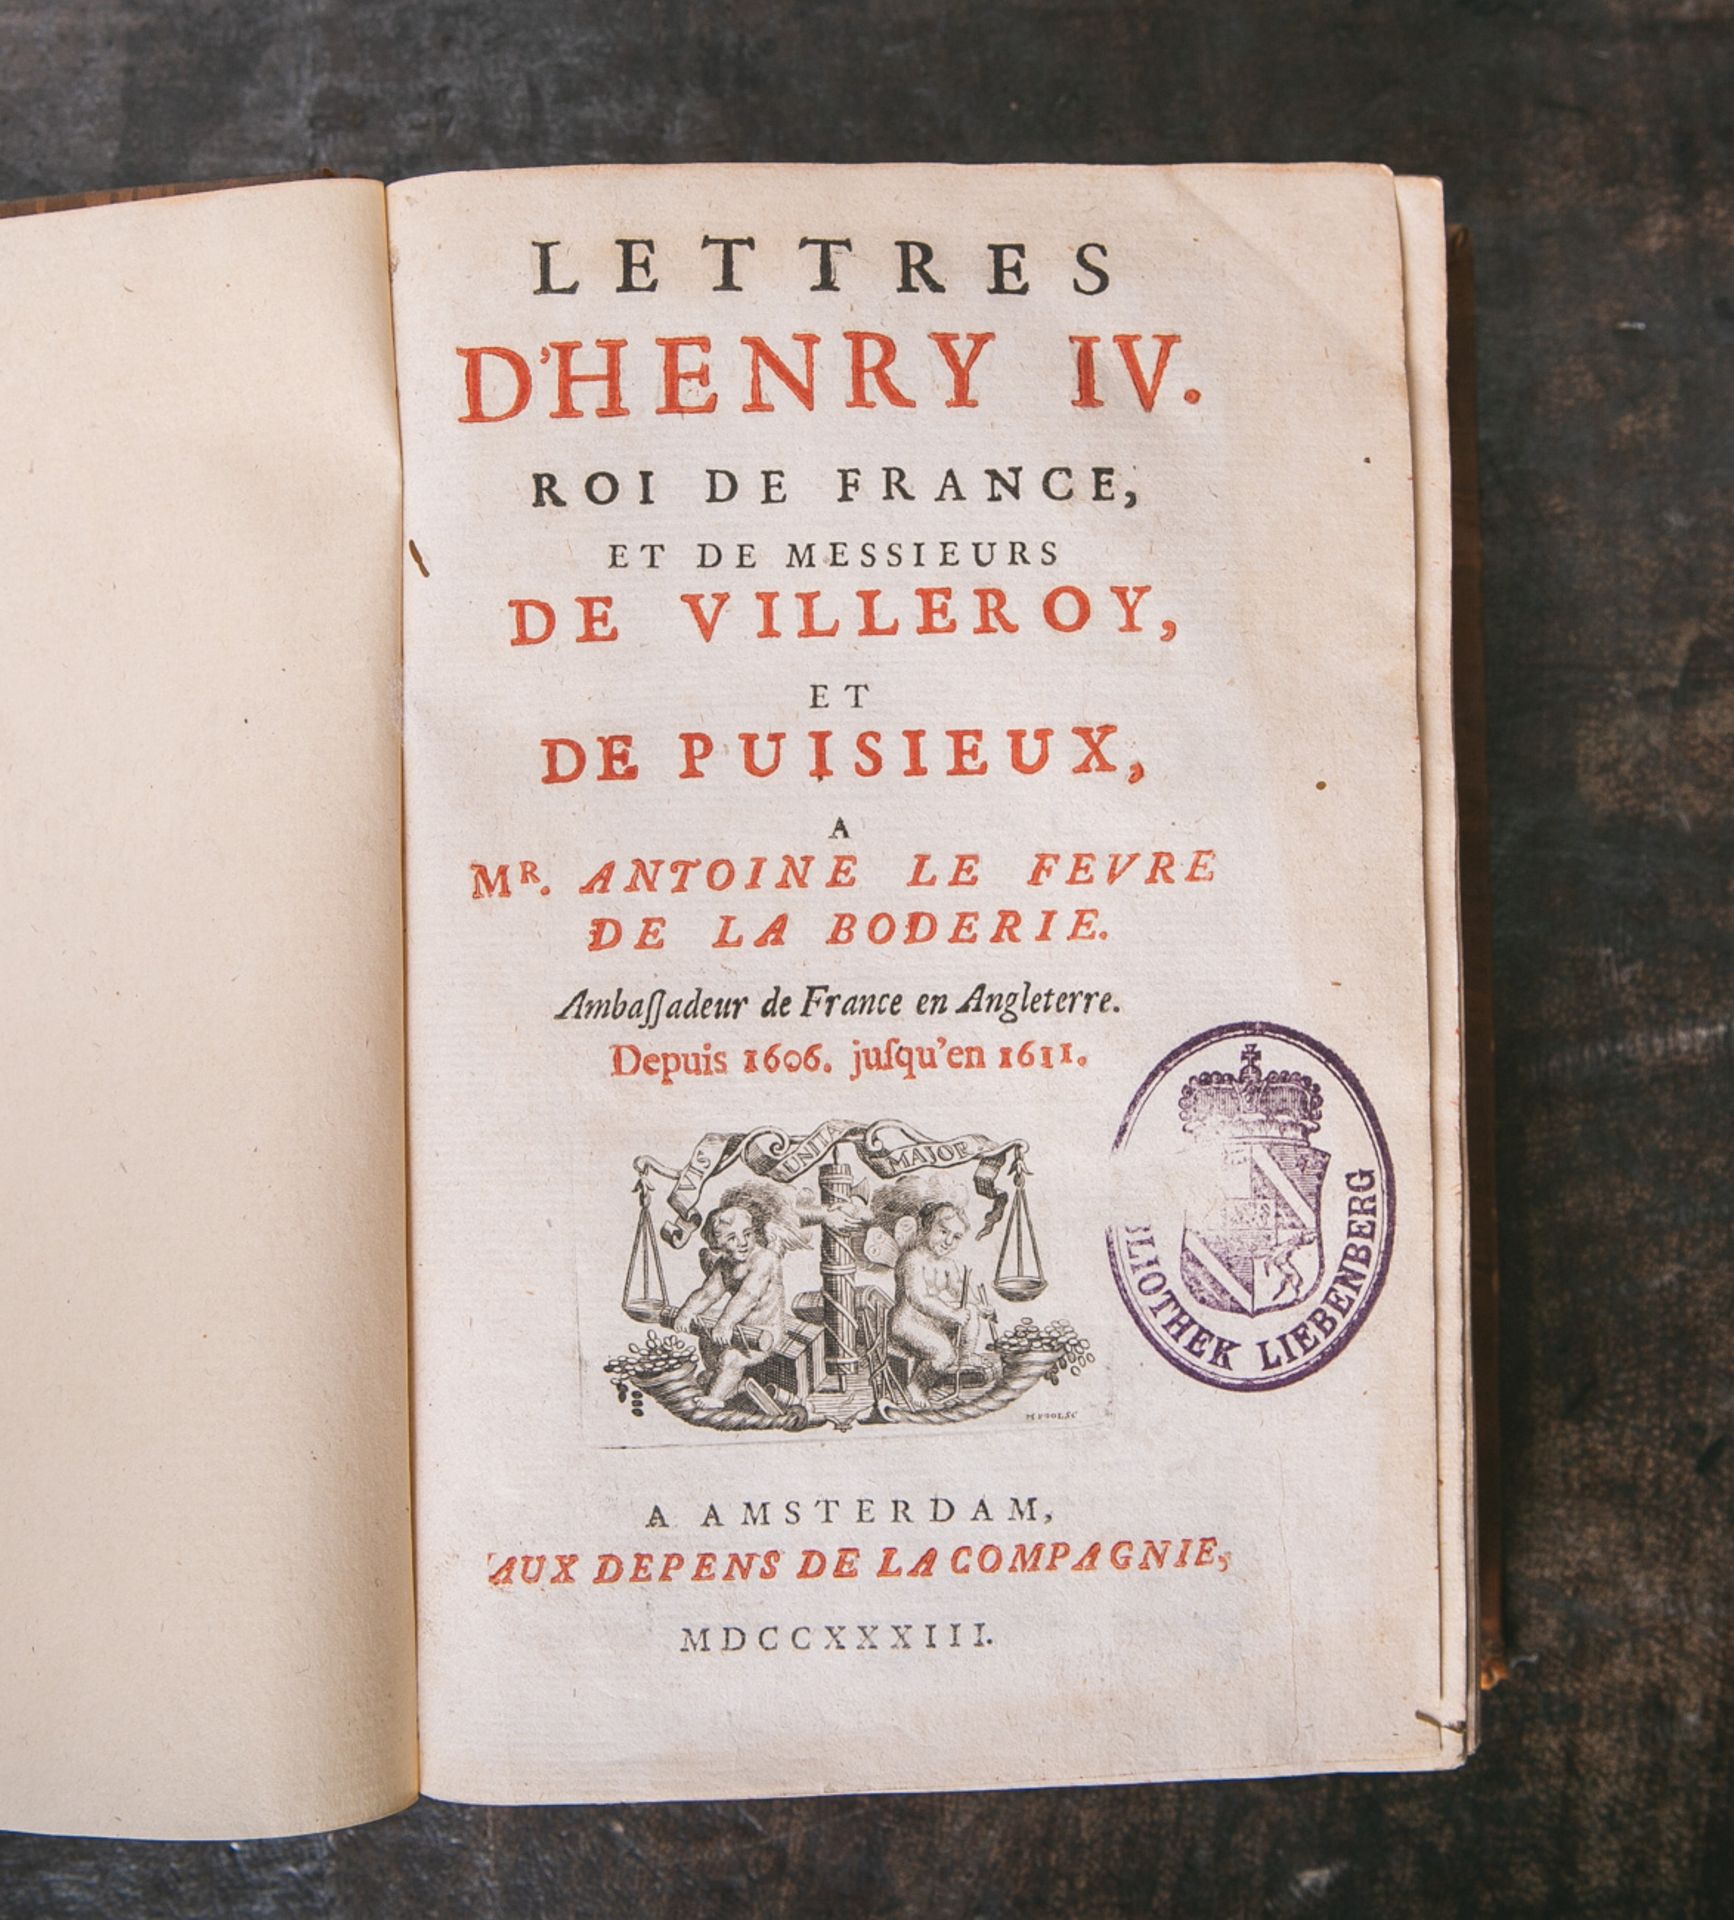 Lettres D'henry IV. Roi de France, et de Messieurs De Villeroy, et De Puisieux